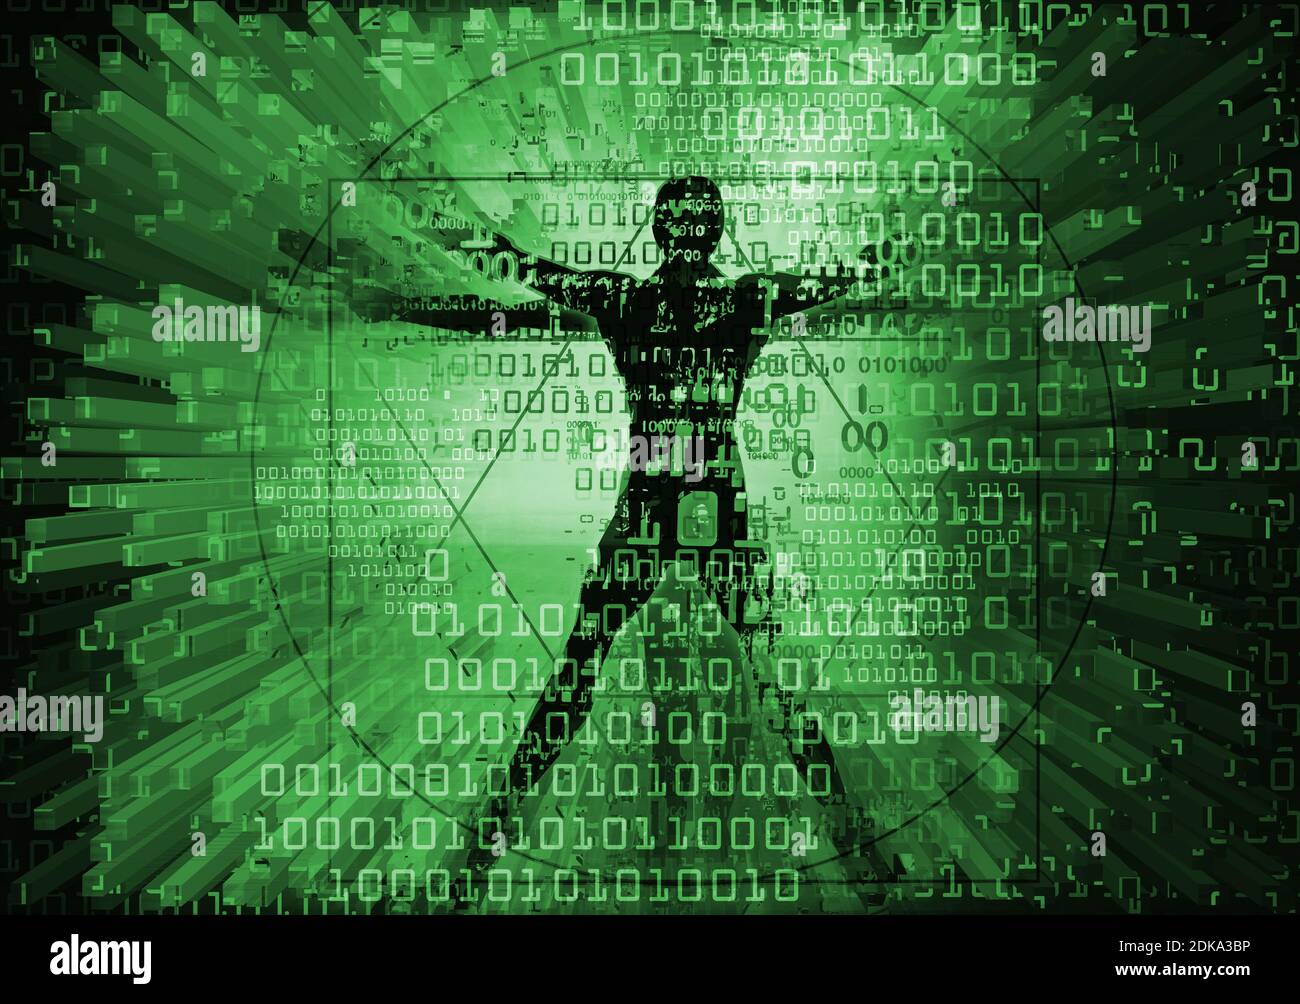 Uomo Vitruviano nel ciberspazio. Grunge futuristico stilizzato Illustrazione di uomo vitruviano verde con codici binari distrutti. Foto Stock